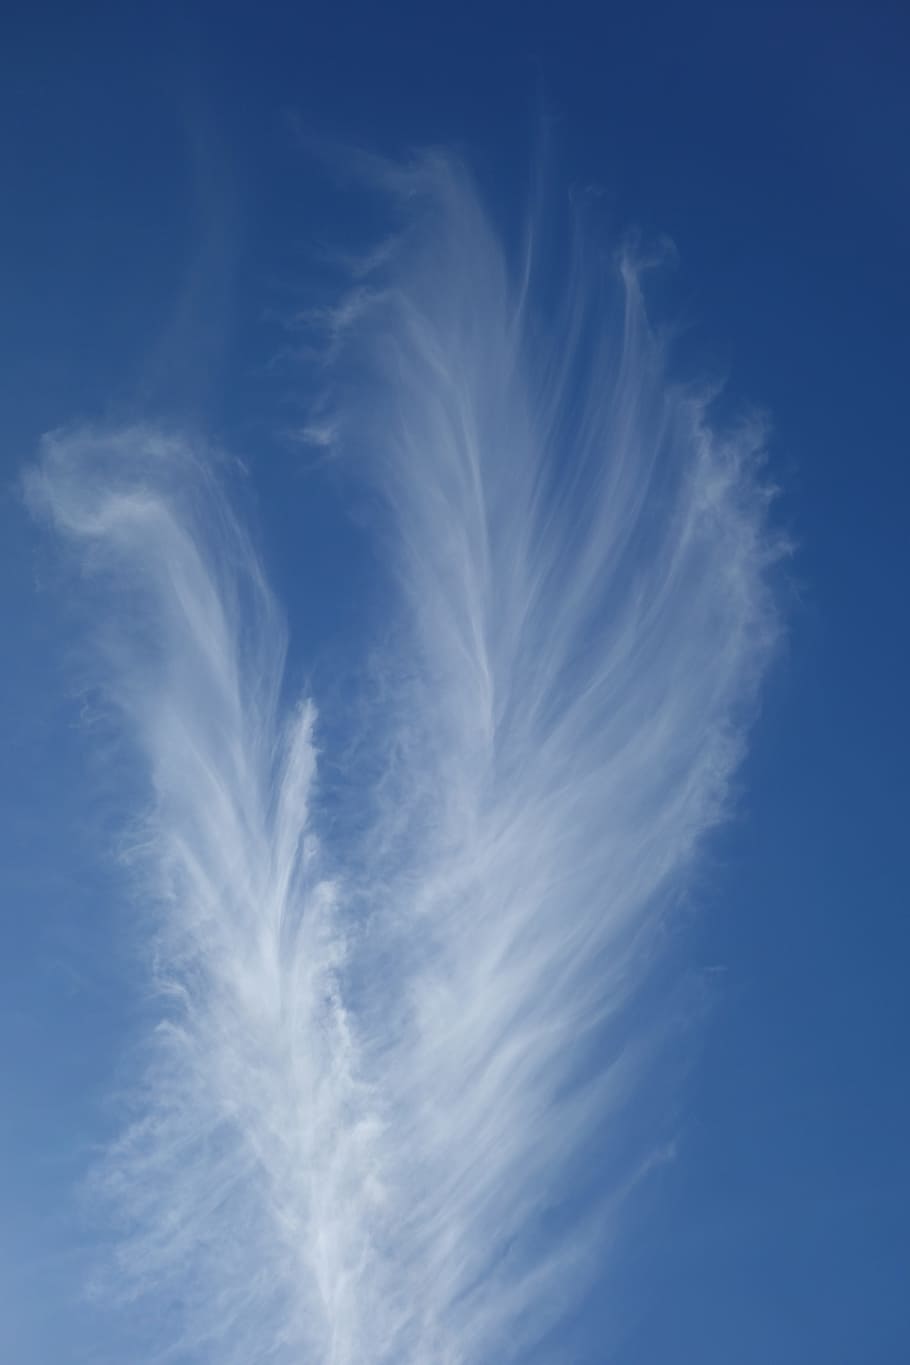 Cloud, Sky, Blue, Sky Blue, federwolke, fine ice crystals, cloud - sky, HD wallpaper